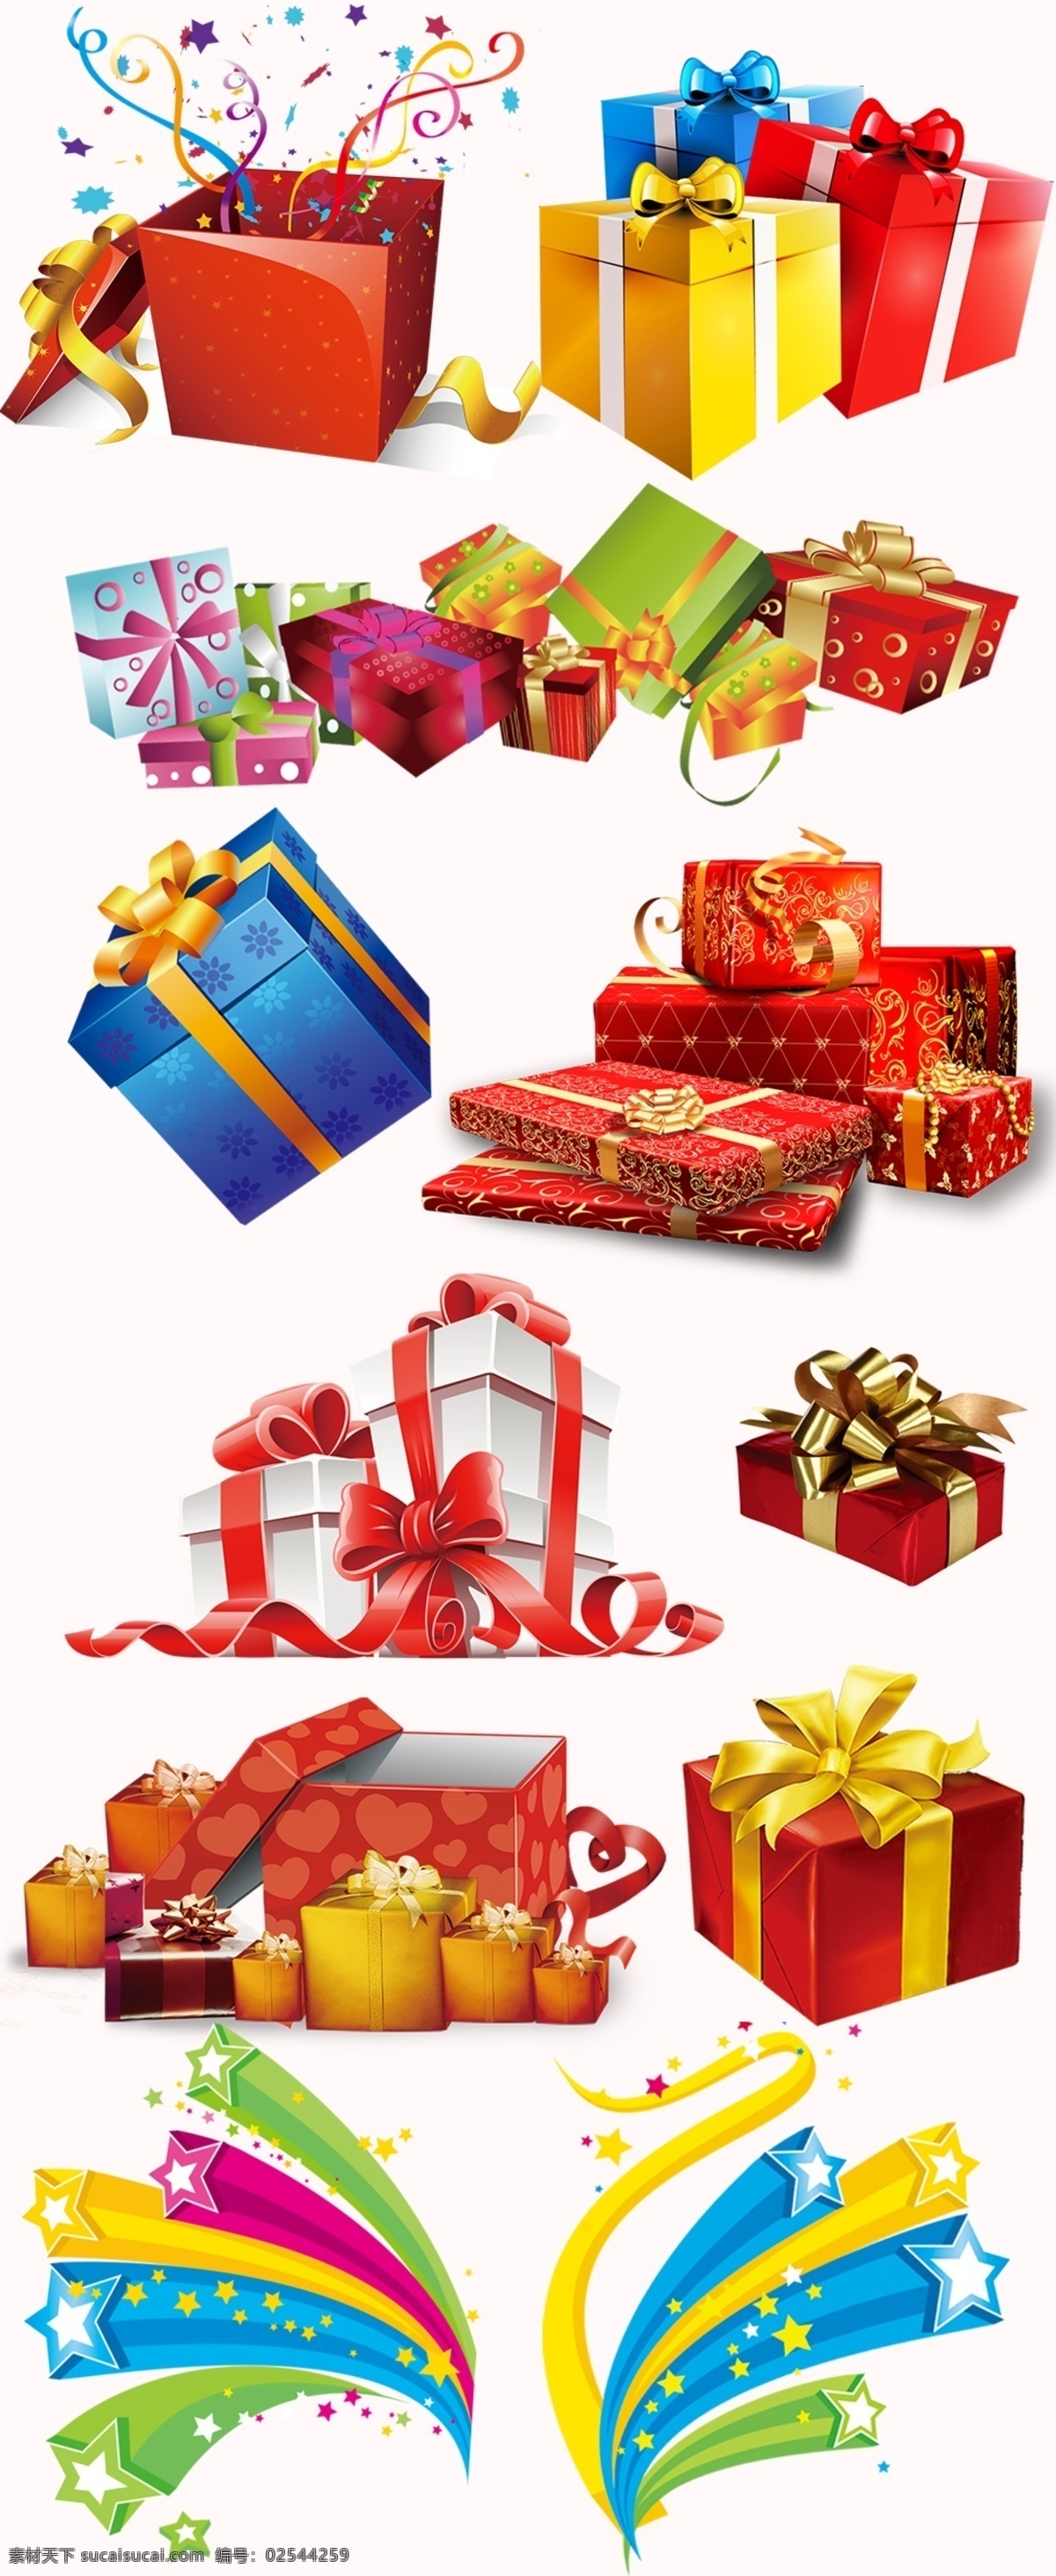 各色 多彩 礼物 盒 集合 缤纷 礼物包装 礼物素材 礼物盒子汇总 复古礼盒 时尚礼盒 礼盒包装 vi设计